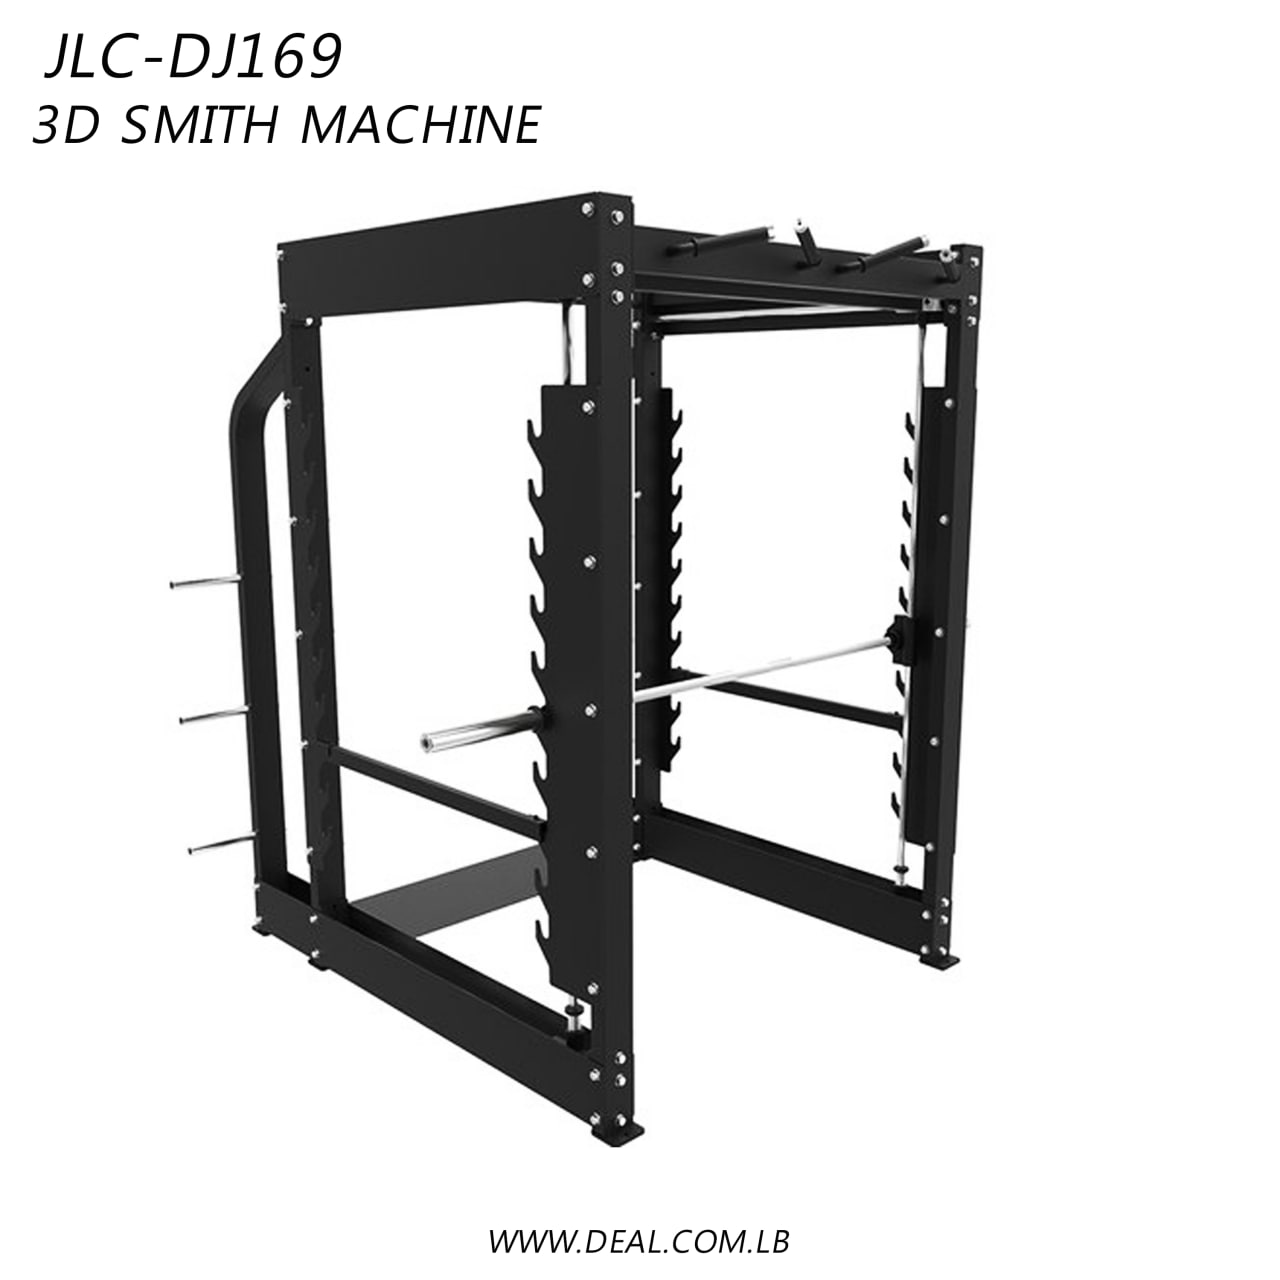 JLC-DJ169 | 3D Smith Machine